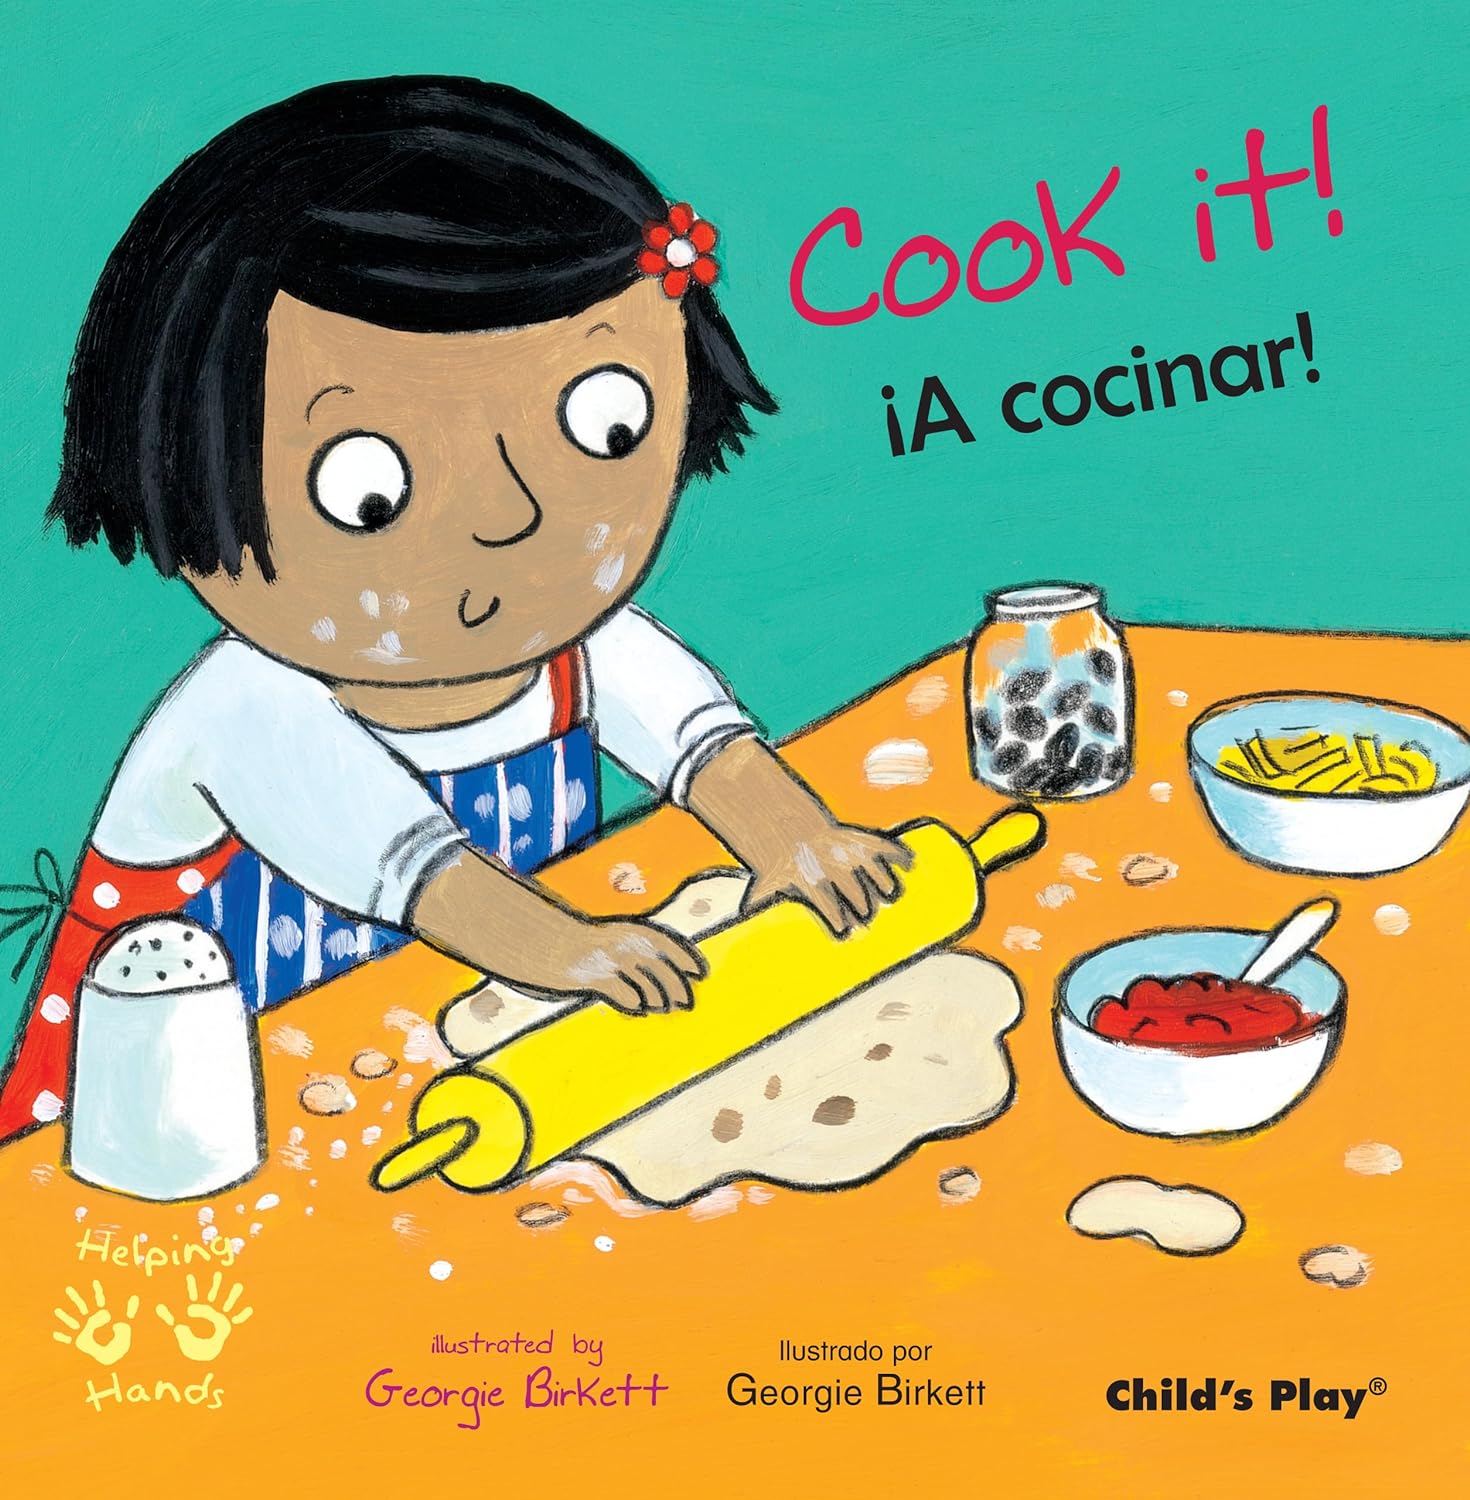 Cook It! / A cocinar! (Childs Play, Georgie Birkett)